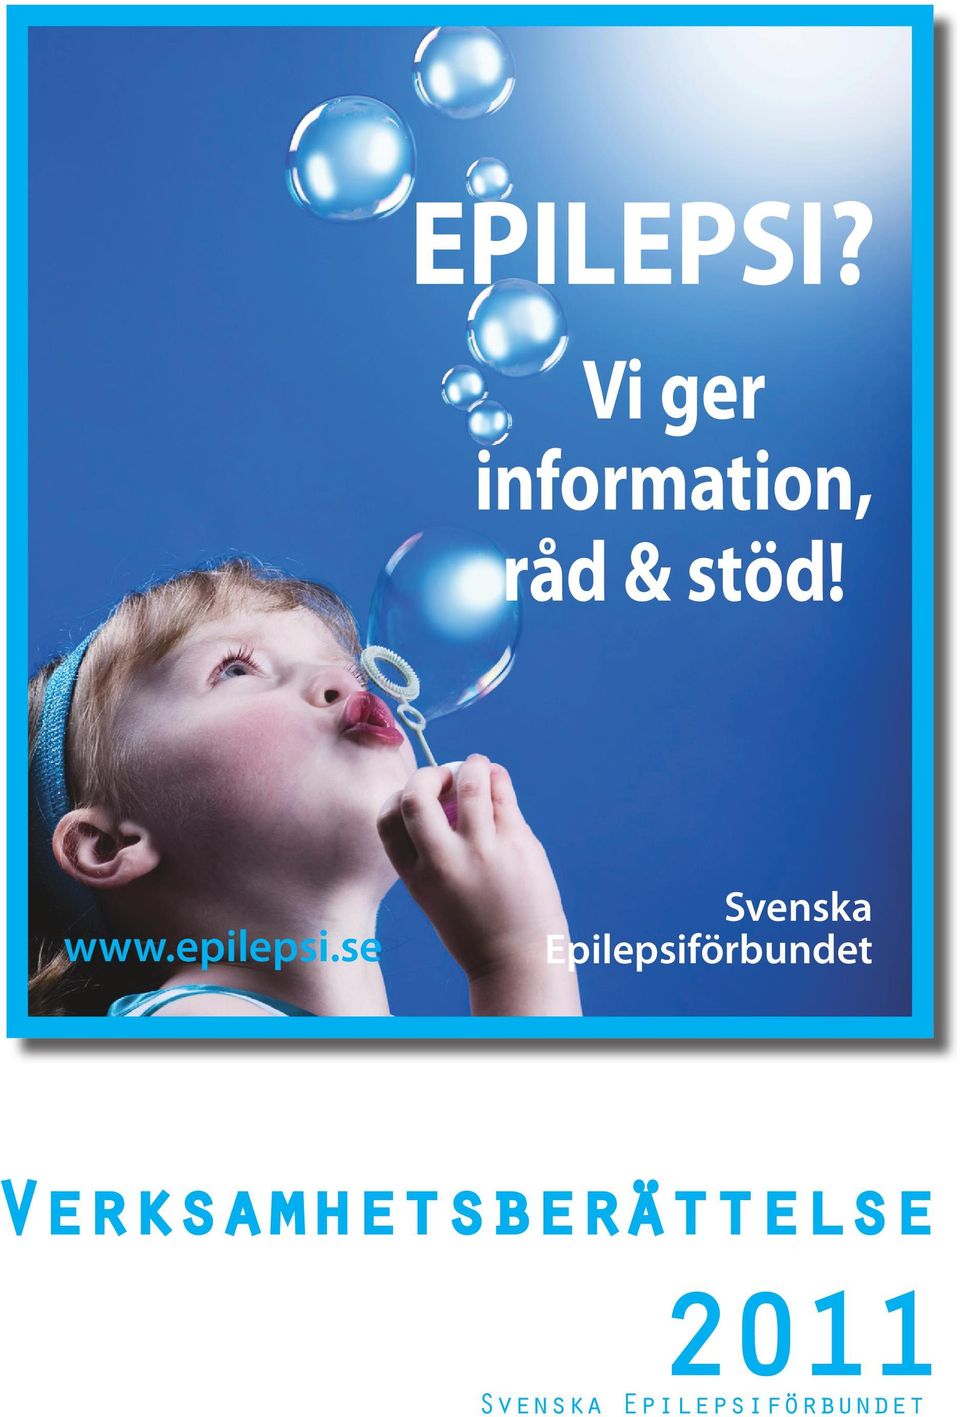 www.epilepsi.